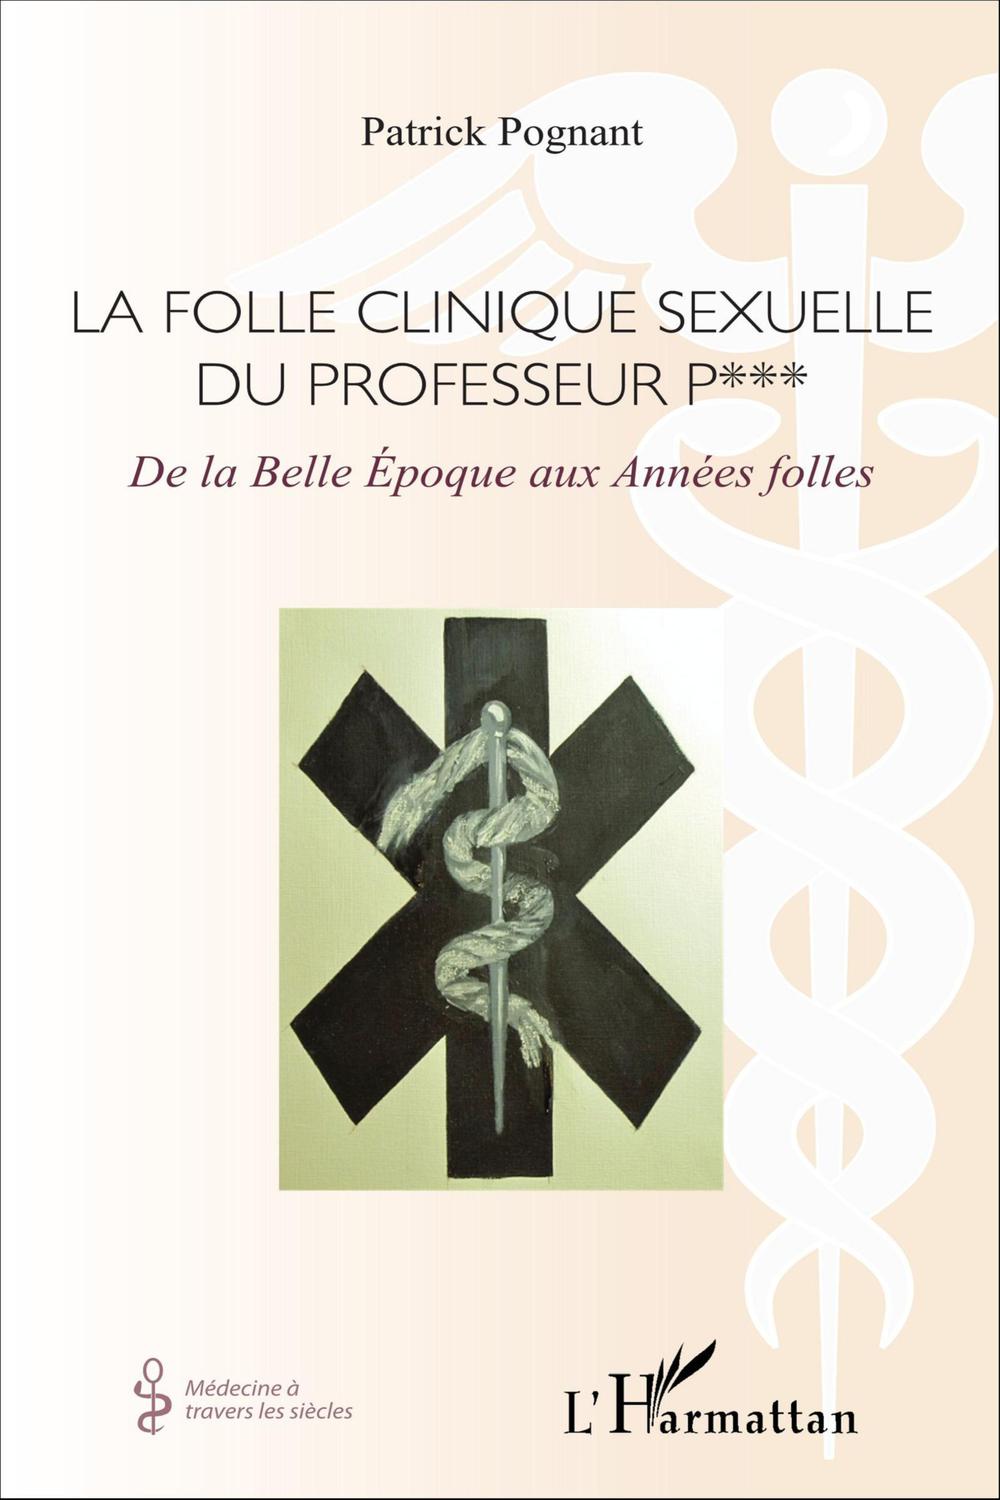 La folle clinique sexuelle du professeur P*** - Patrick Albert Charles Pognant